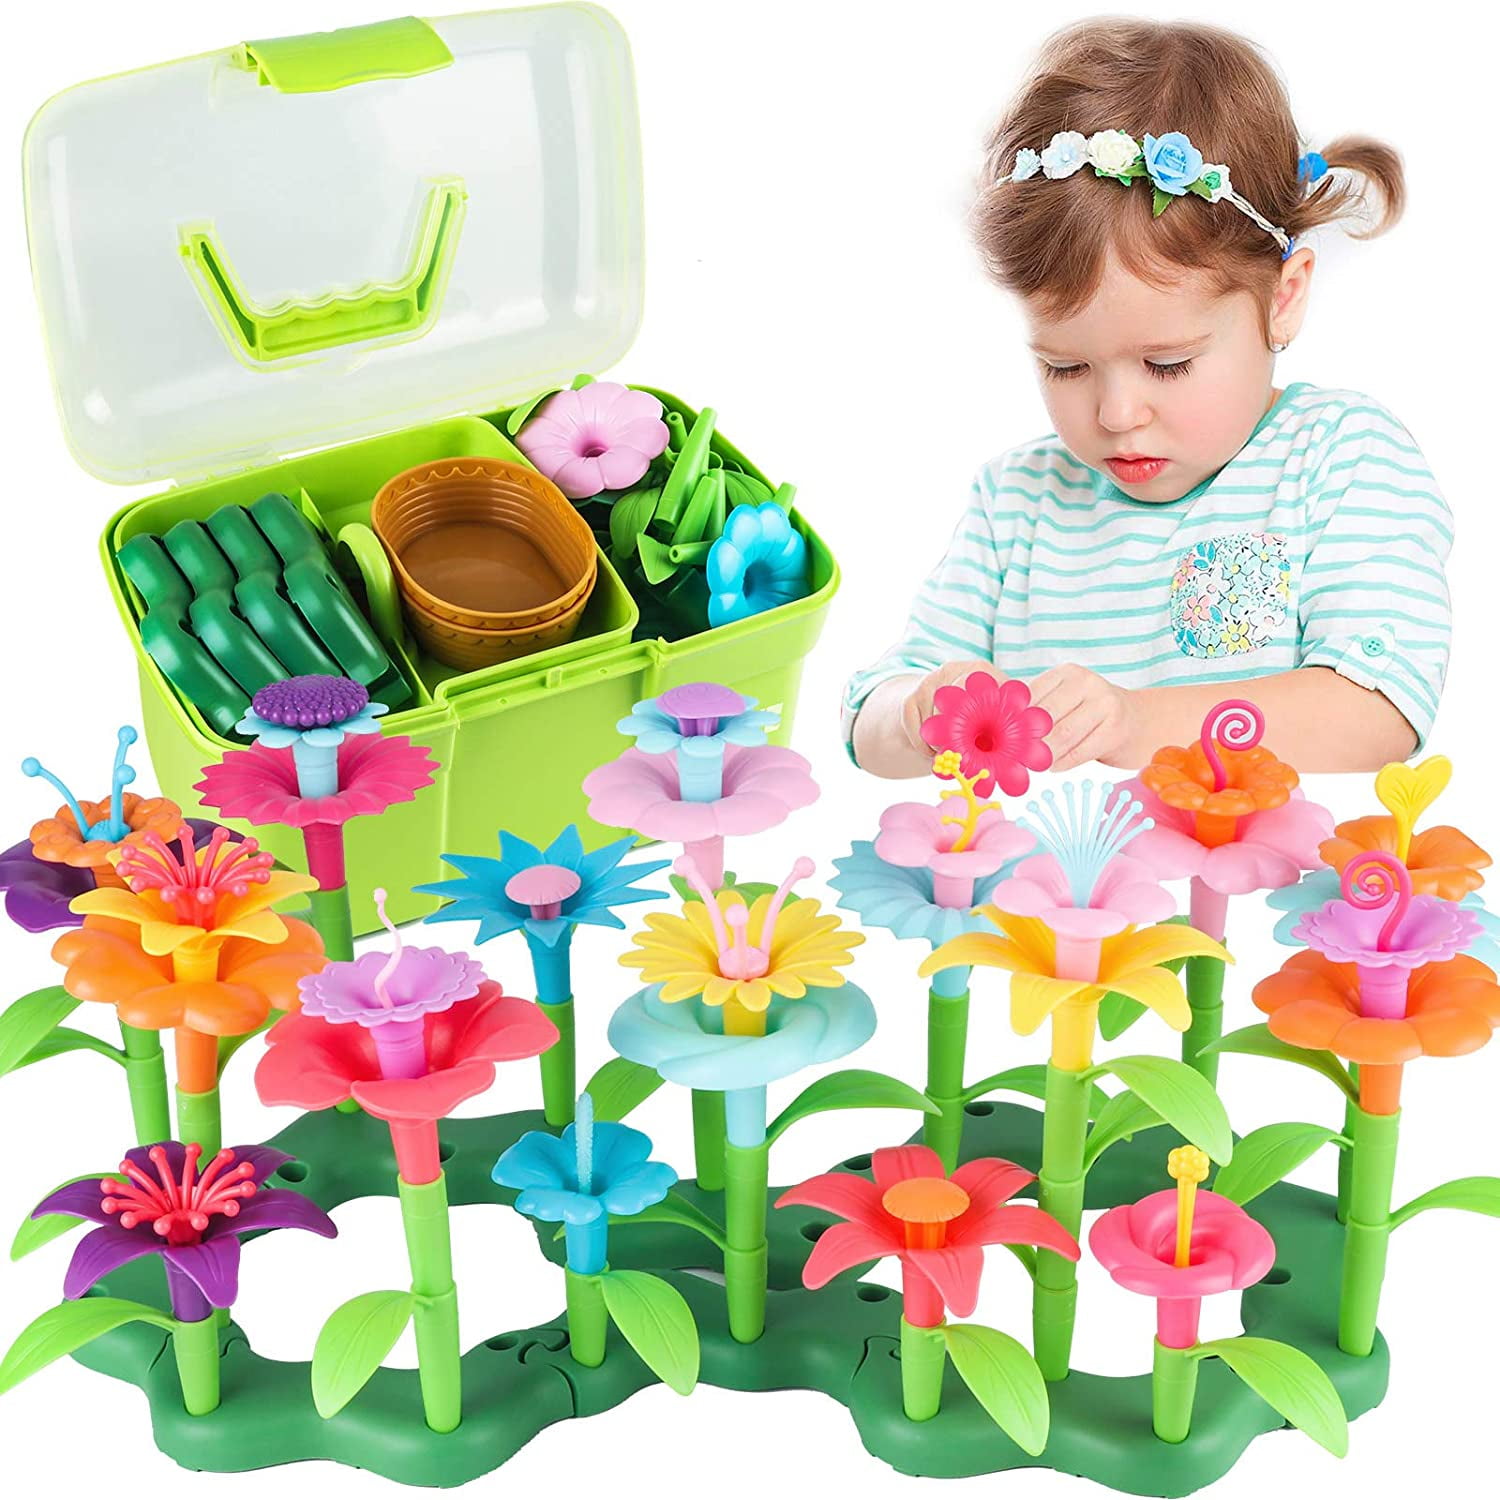 Flower Garden Building Toys Children Educational Toy for Kids Girl 